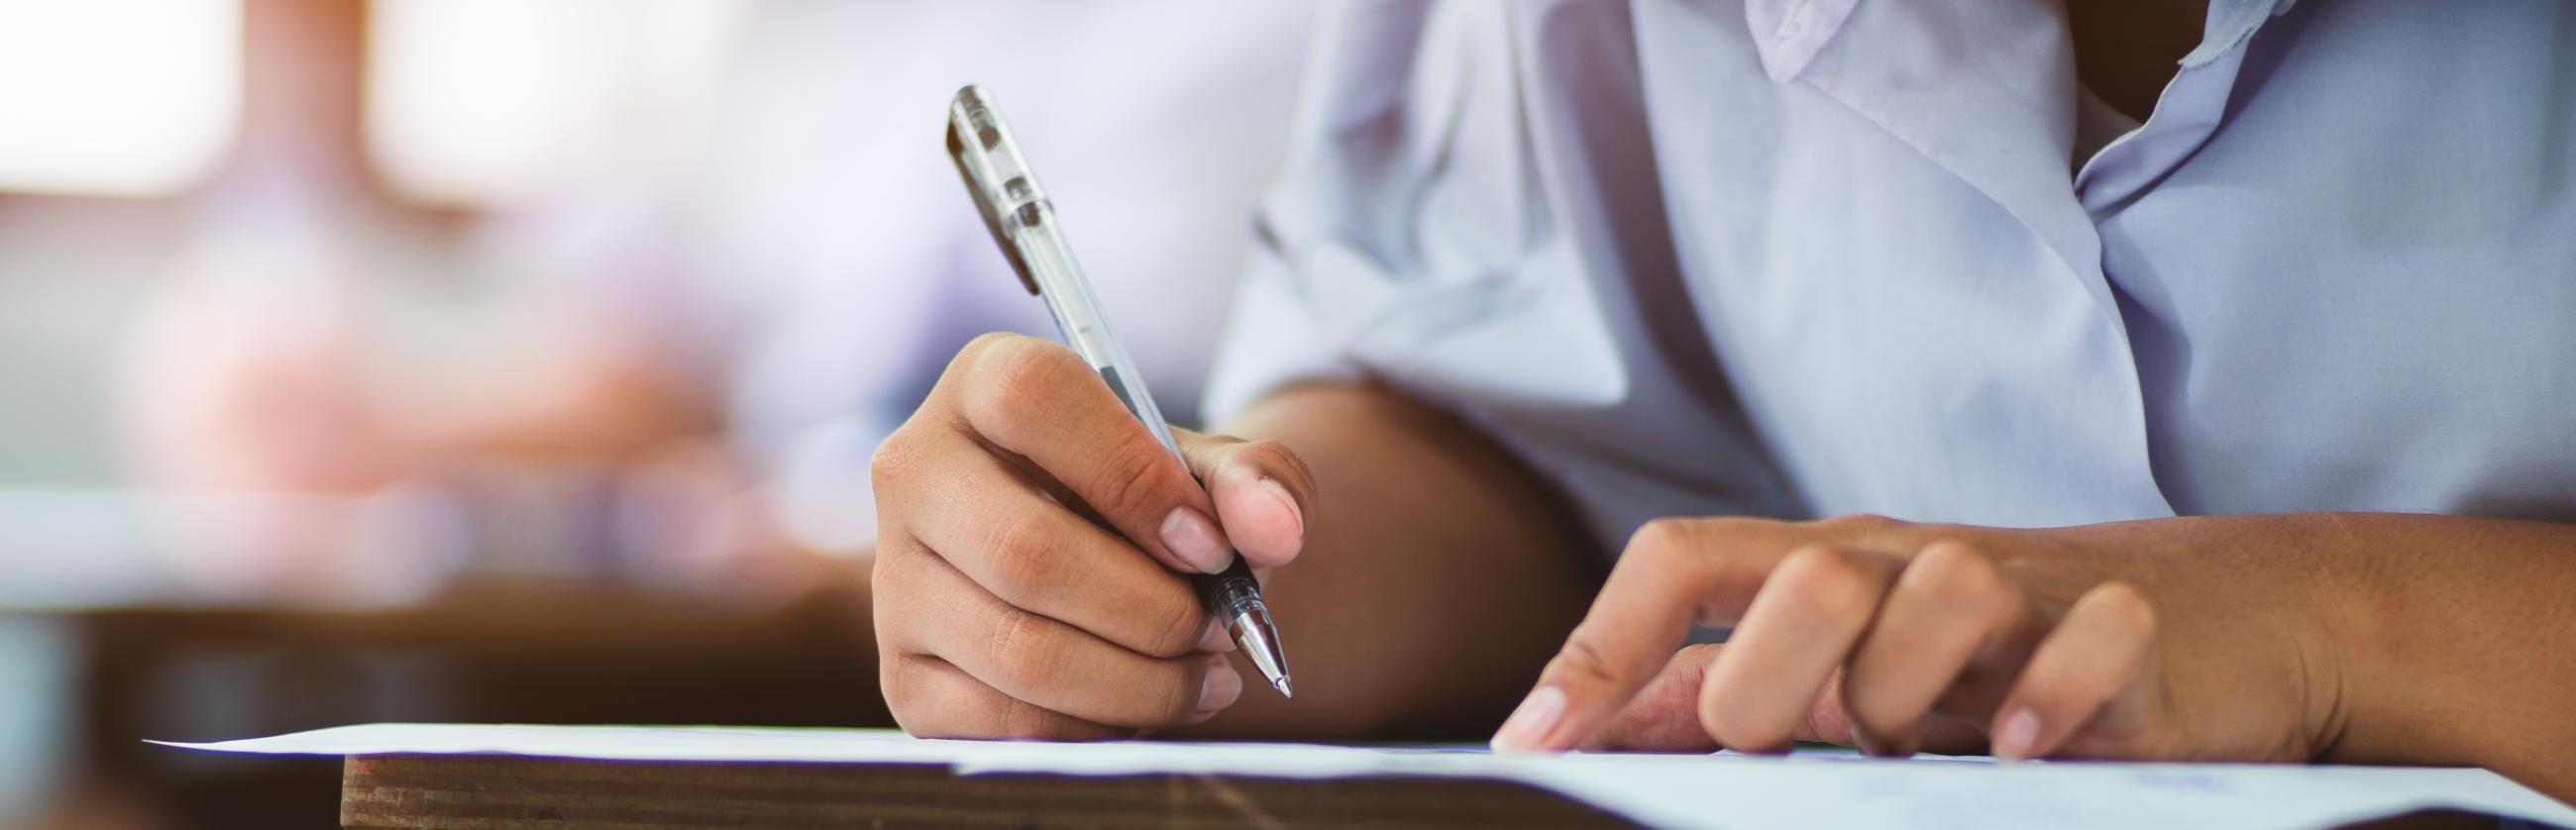 Apprenante stylo à la main en train d'écrire sur une feuille